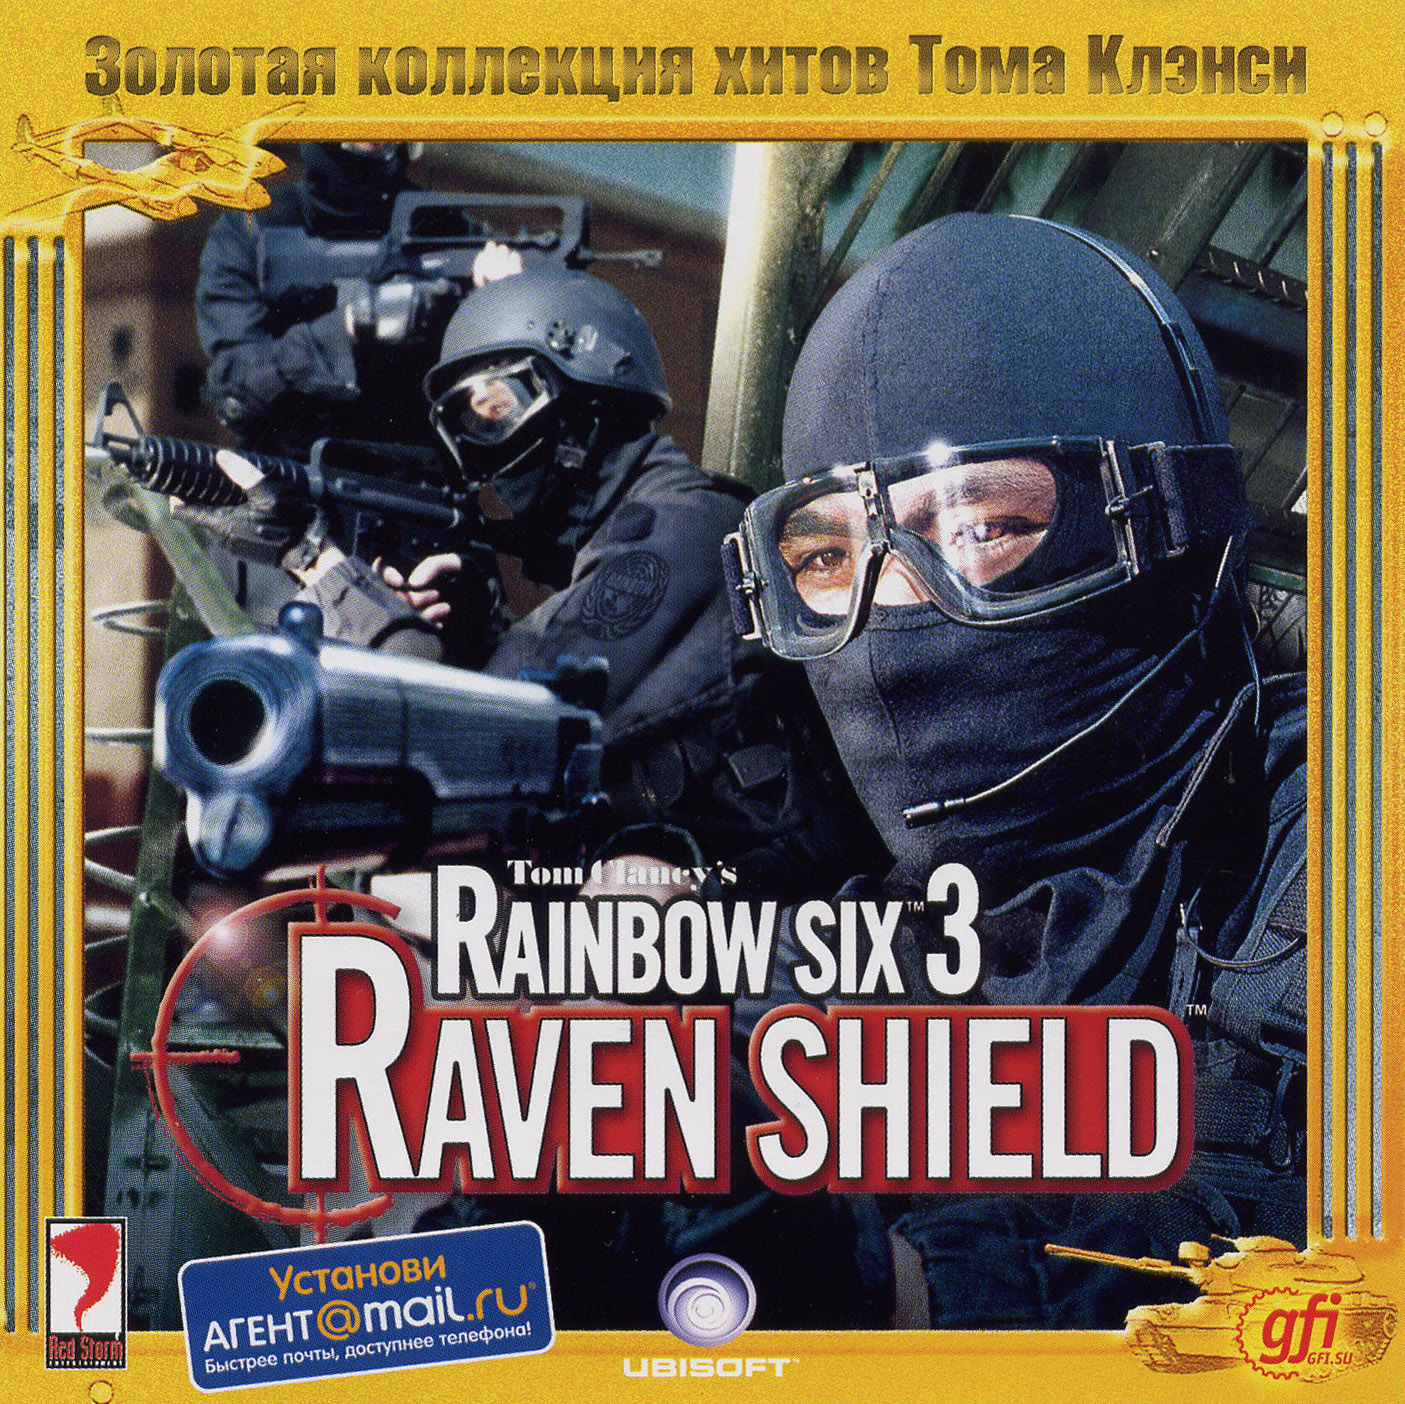 Tom clancys rainbow 3. Tom Clancy’s Rainbow Six 3: Raven Shield. Rainbow Six 3 Raven Shield. Tom Clancys Rainbow Six 3 Raven Shield. Tom Clancys Rainbow Six 3 Raven Shield 2020.